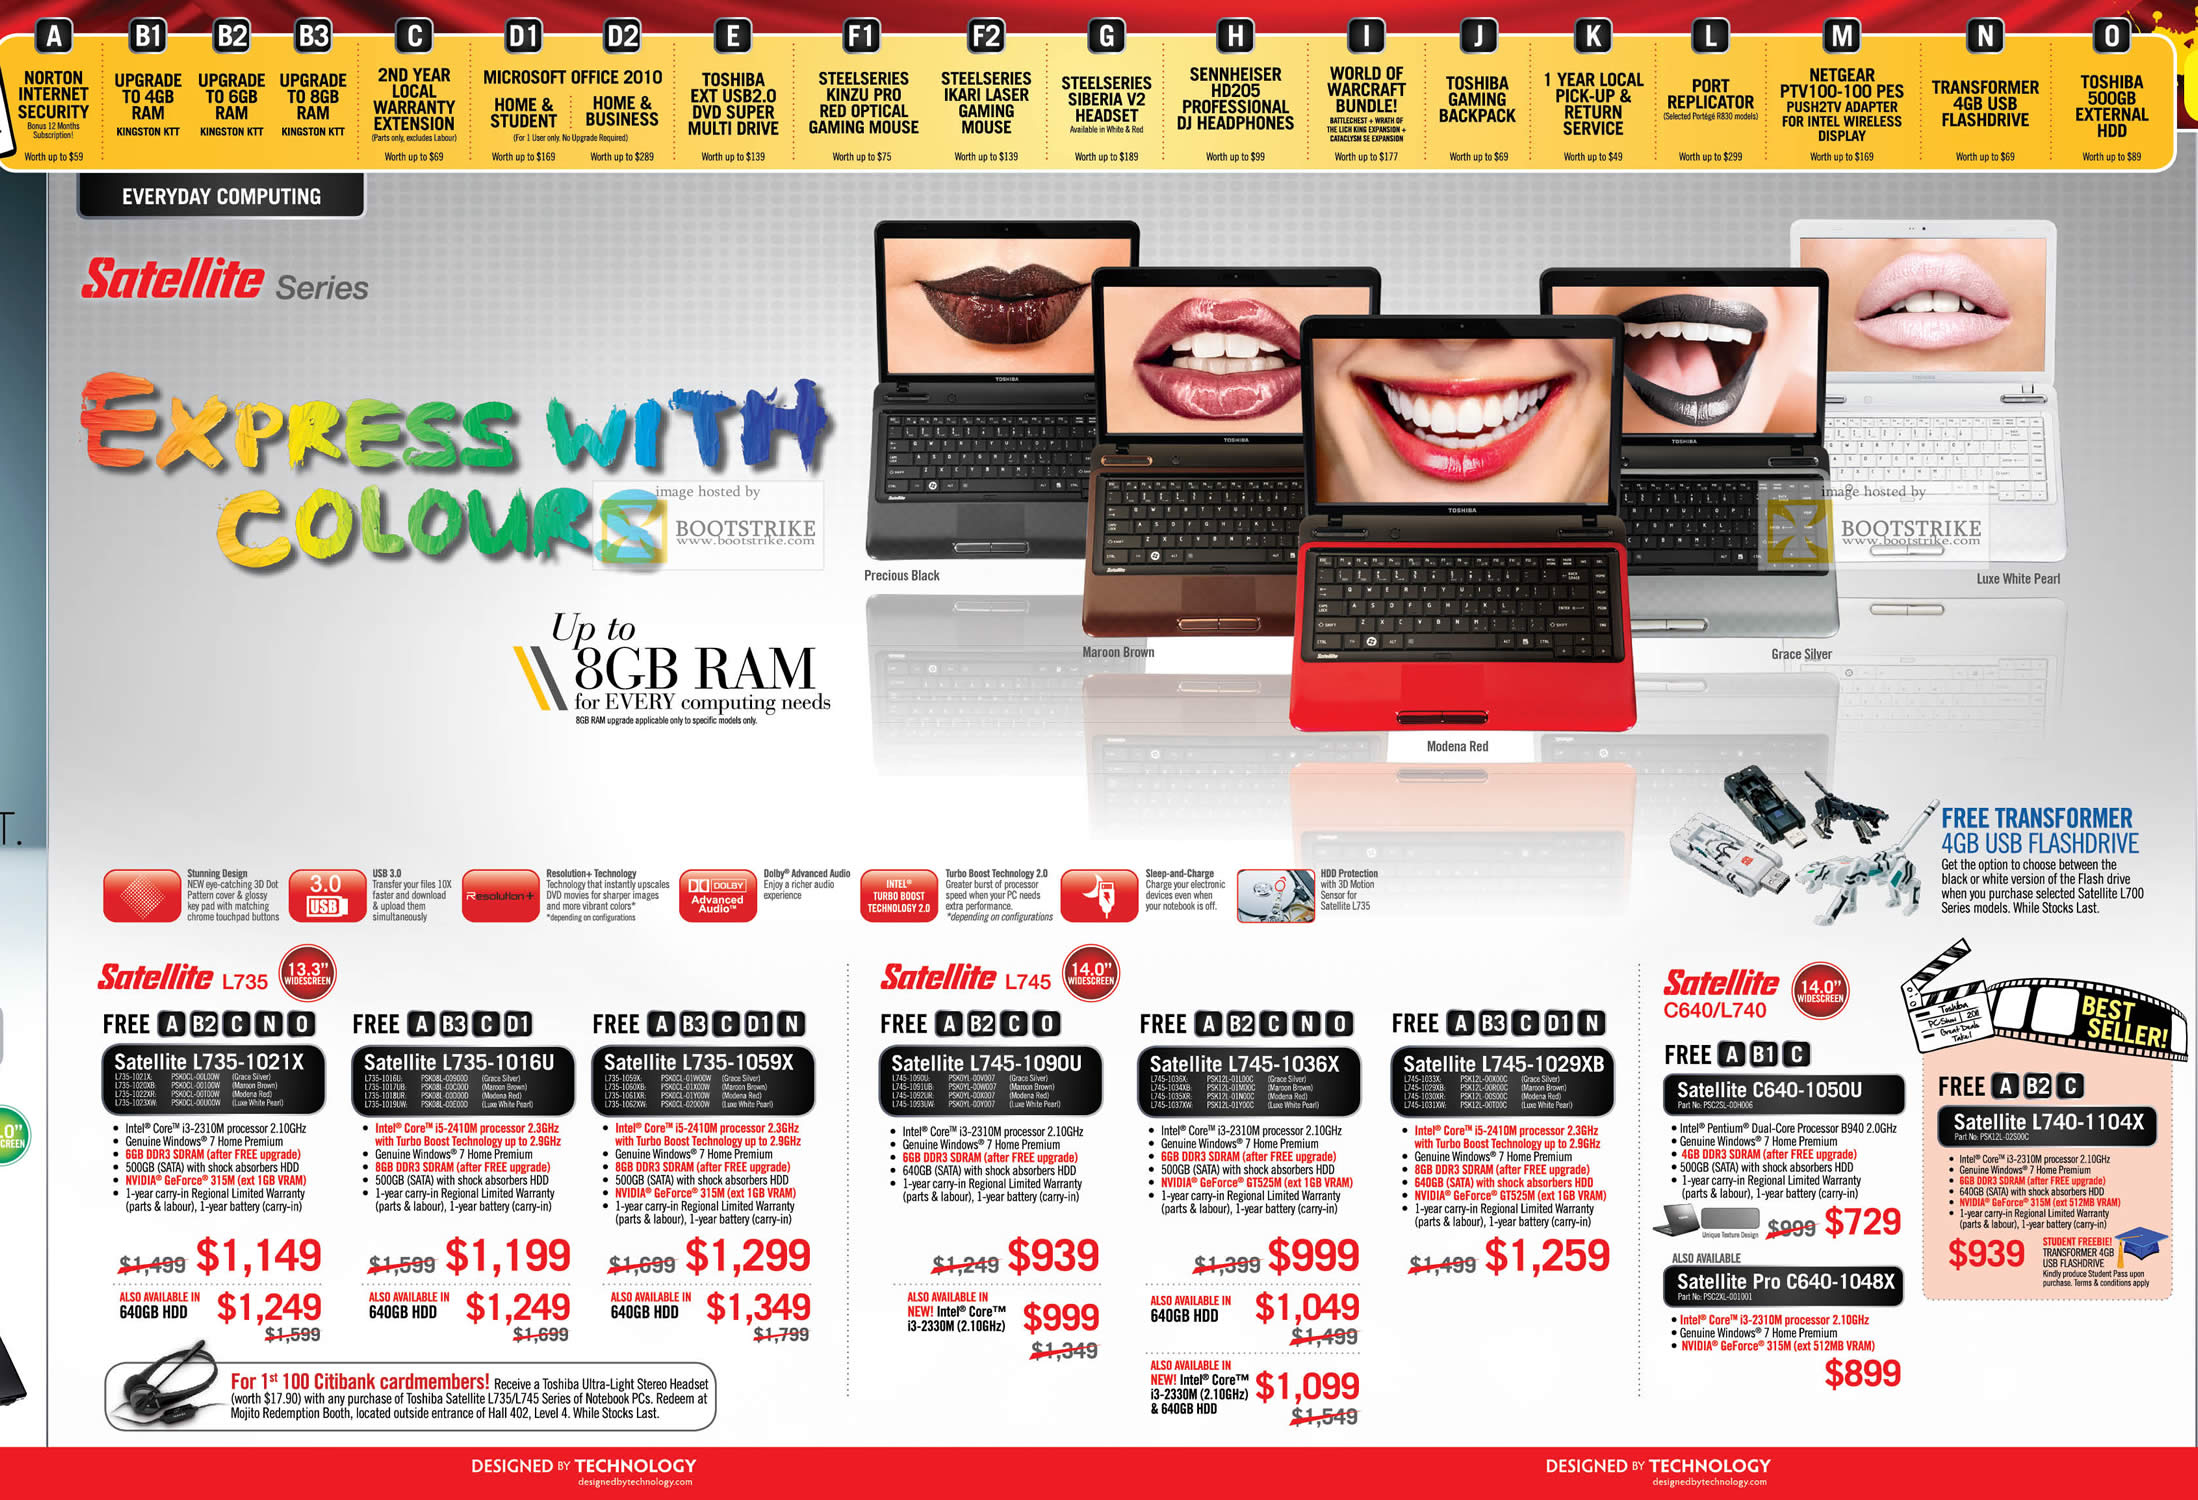 PC Show 2011 price list image brochure of Toshiba Notebooks Satellite L735 1021X 1016U 1059X 1090U 1036X 1029XB C640 1050U 1048X L740 1104X